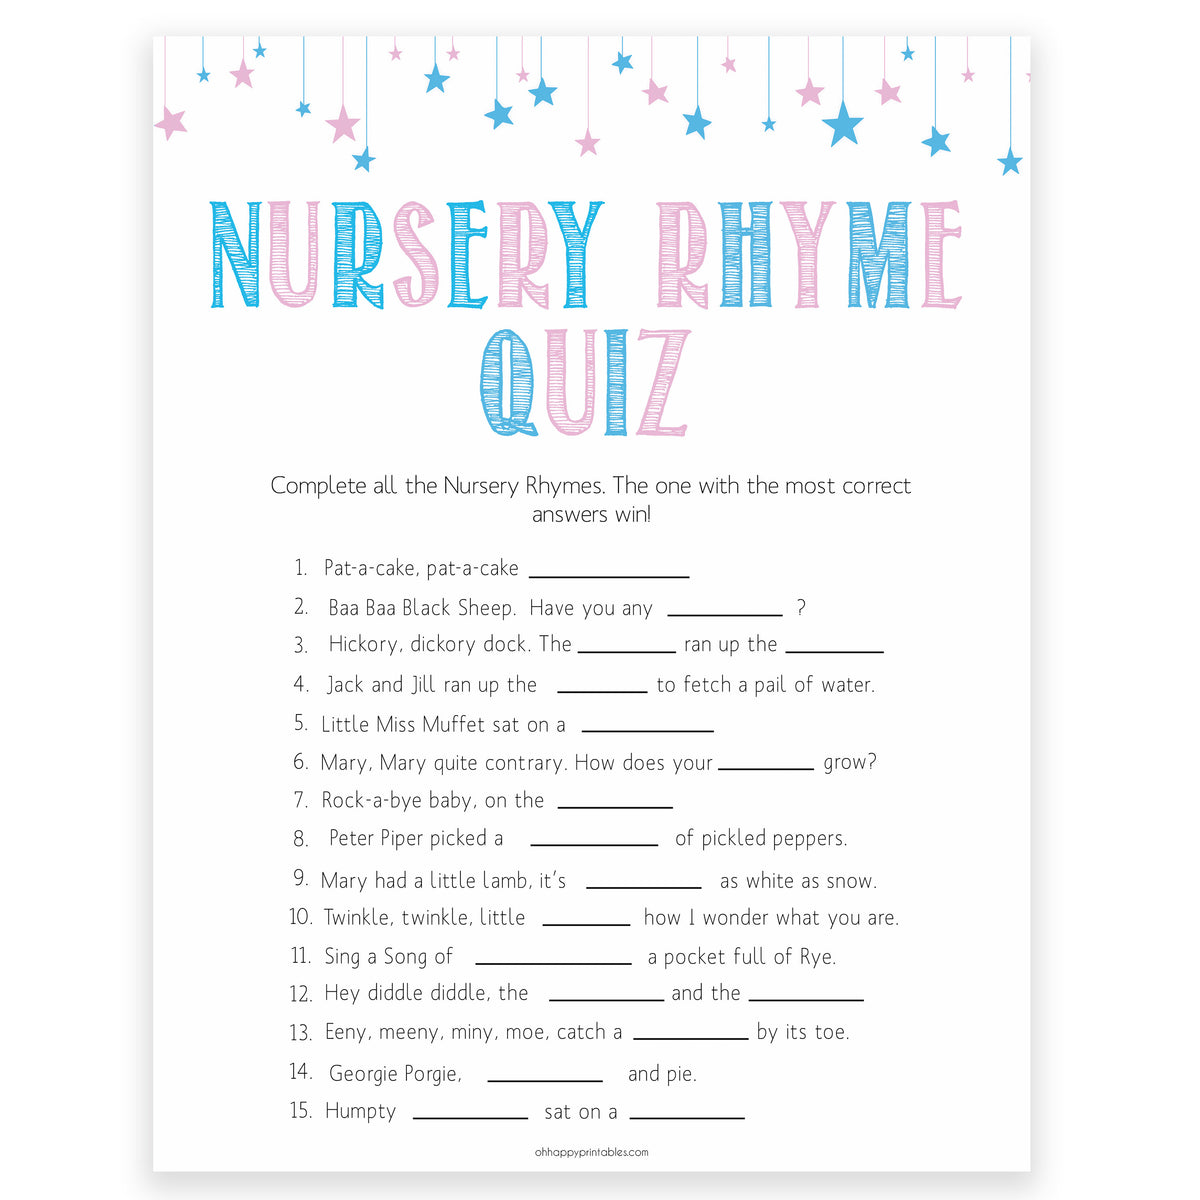 nursery-rhyme-quiz-game-gender-reveal-printable-baby-games-ohhappyprintables